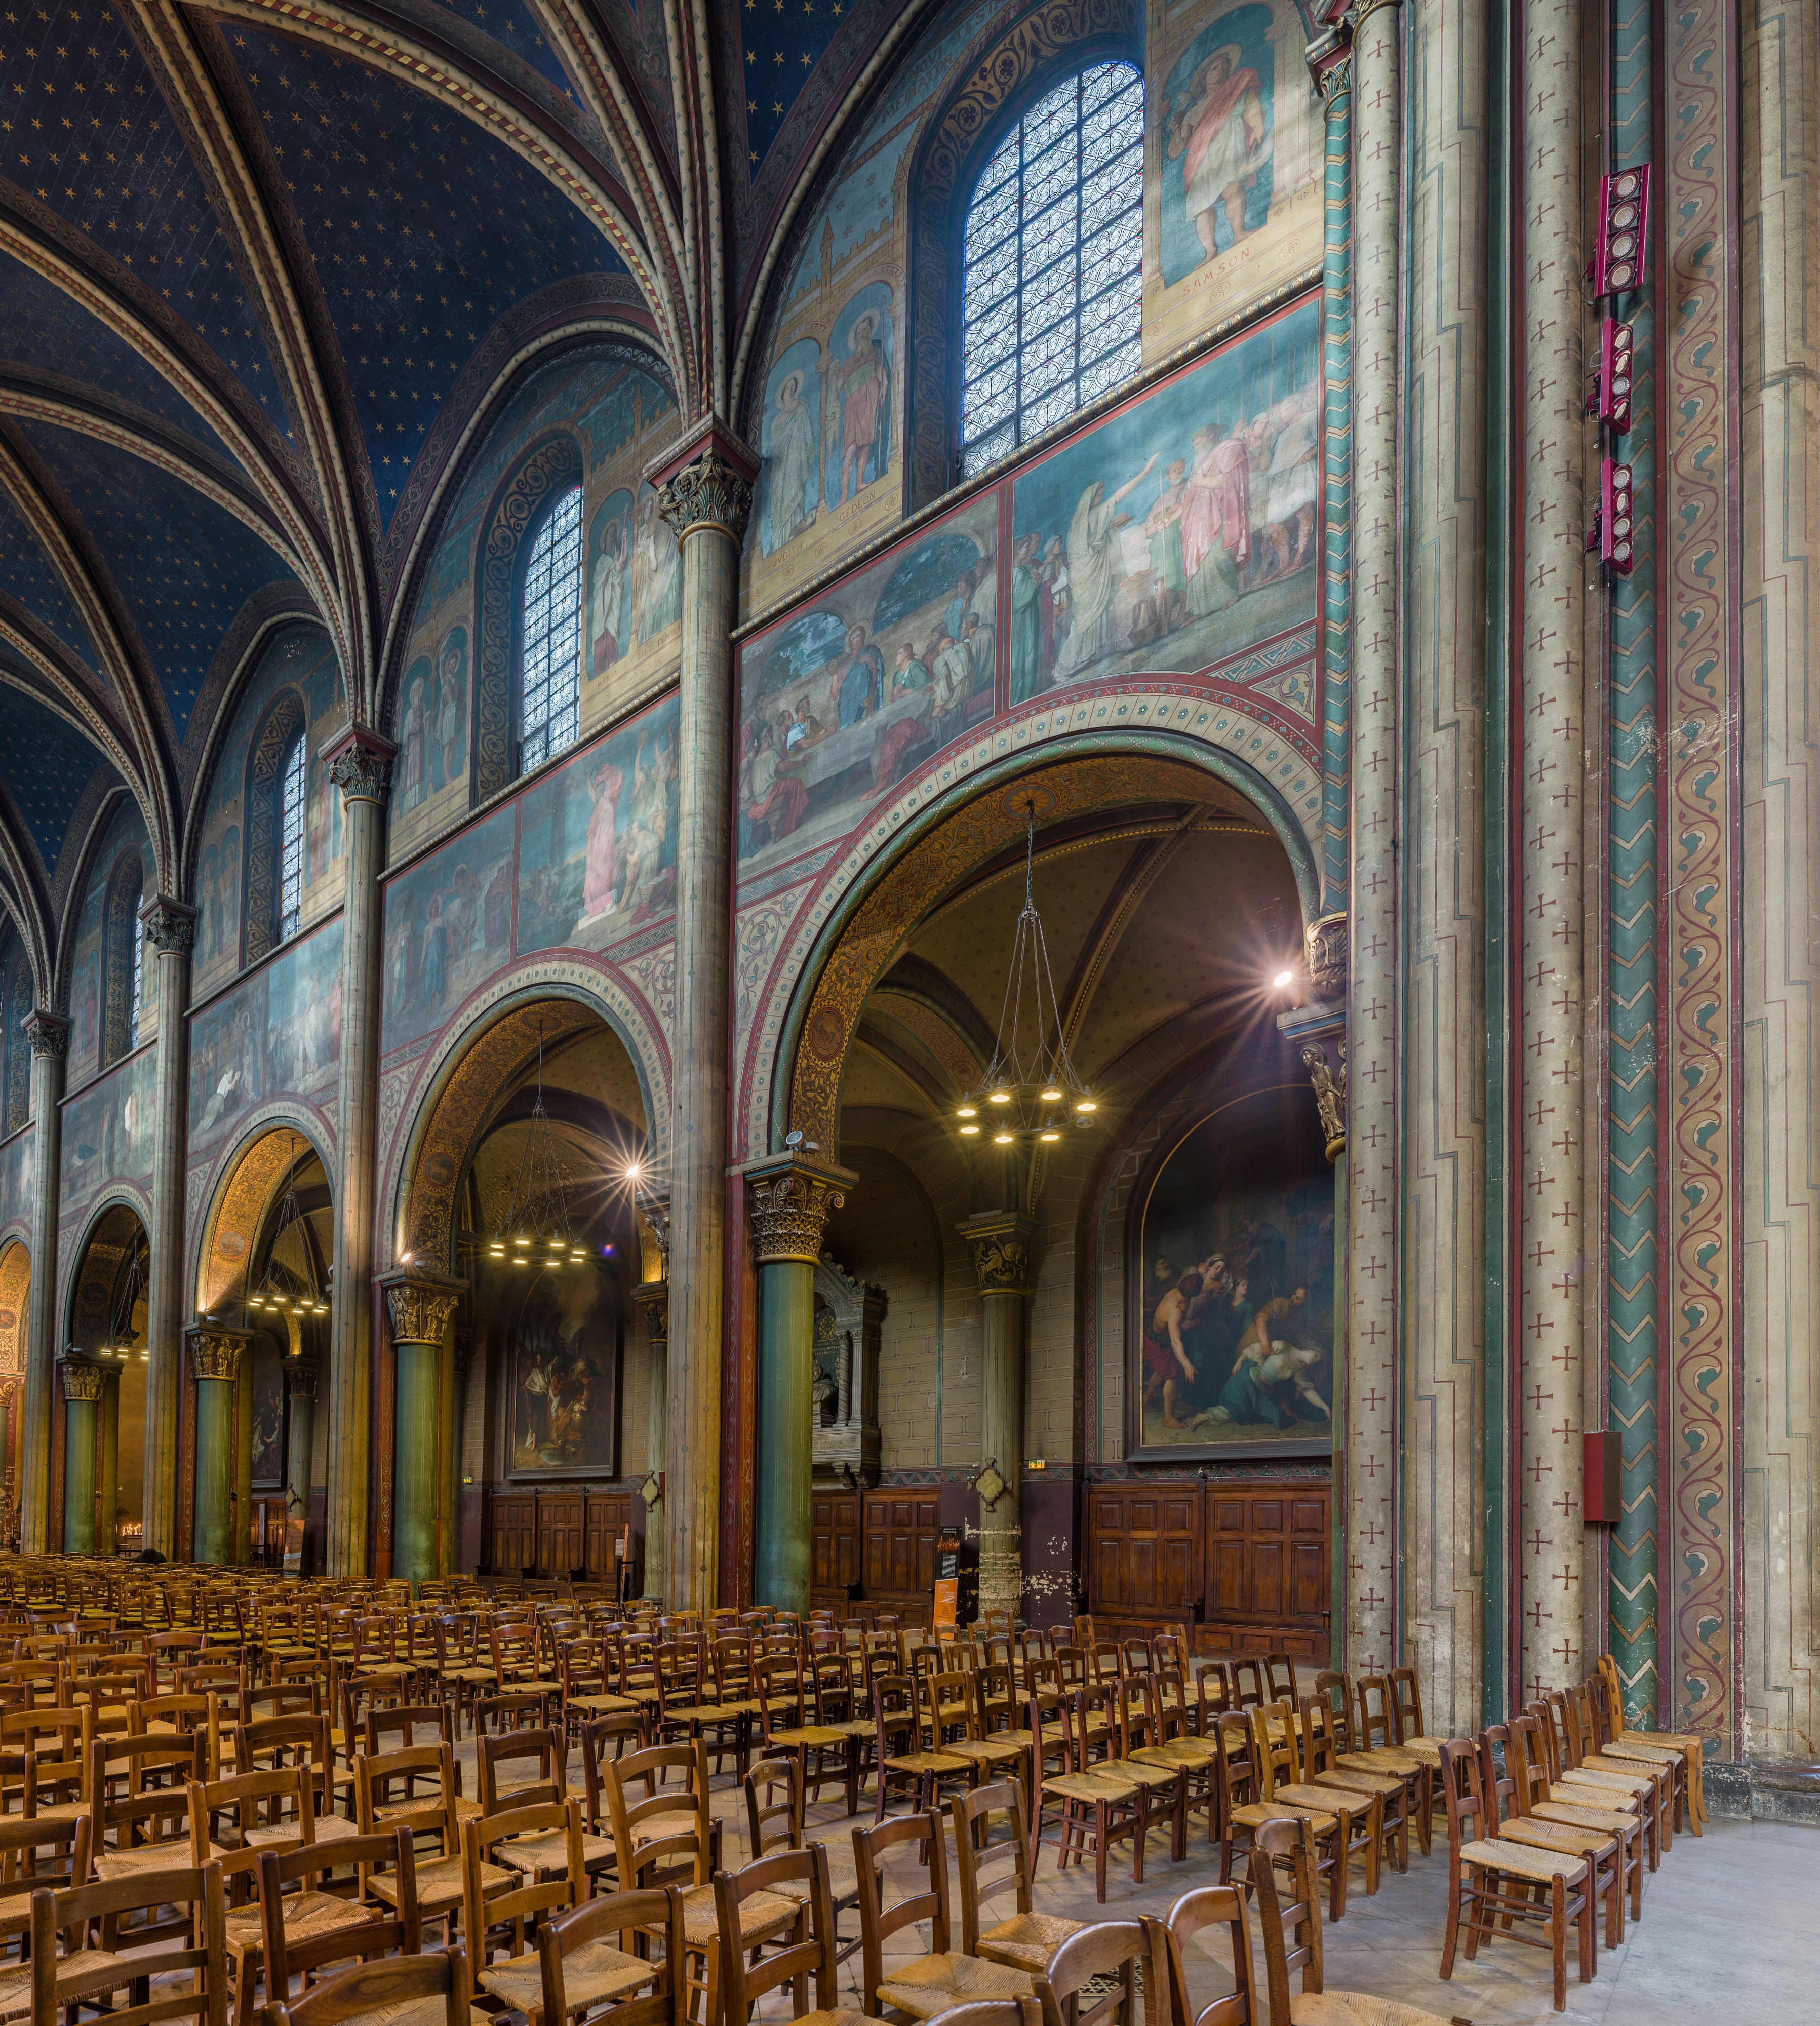 Nave of Abbaye de Saint-Germain-des-Prés, Paris, France - Diliff